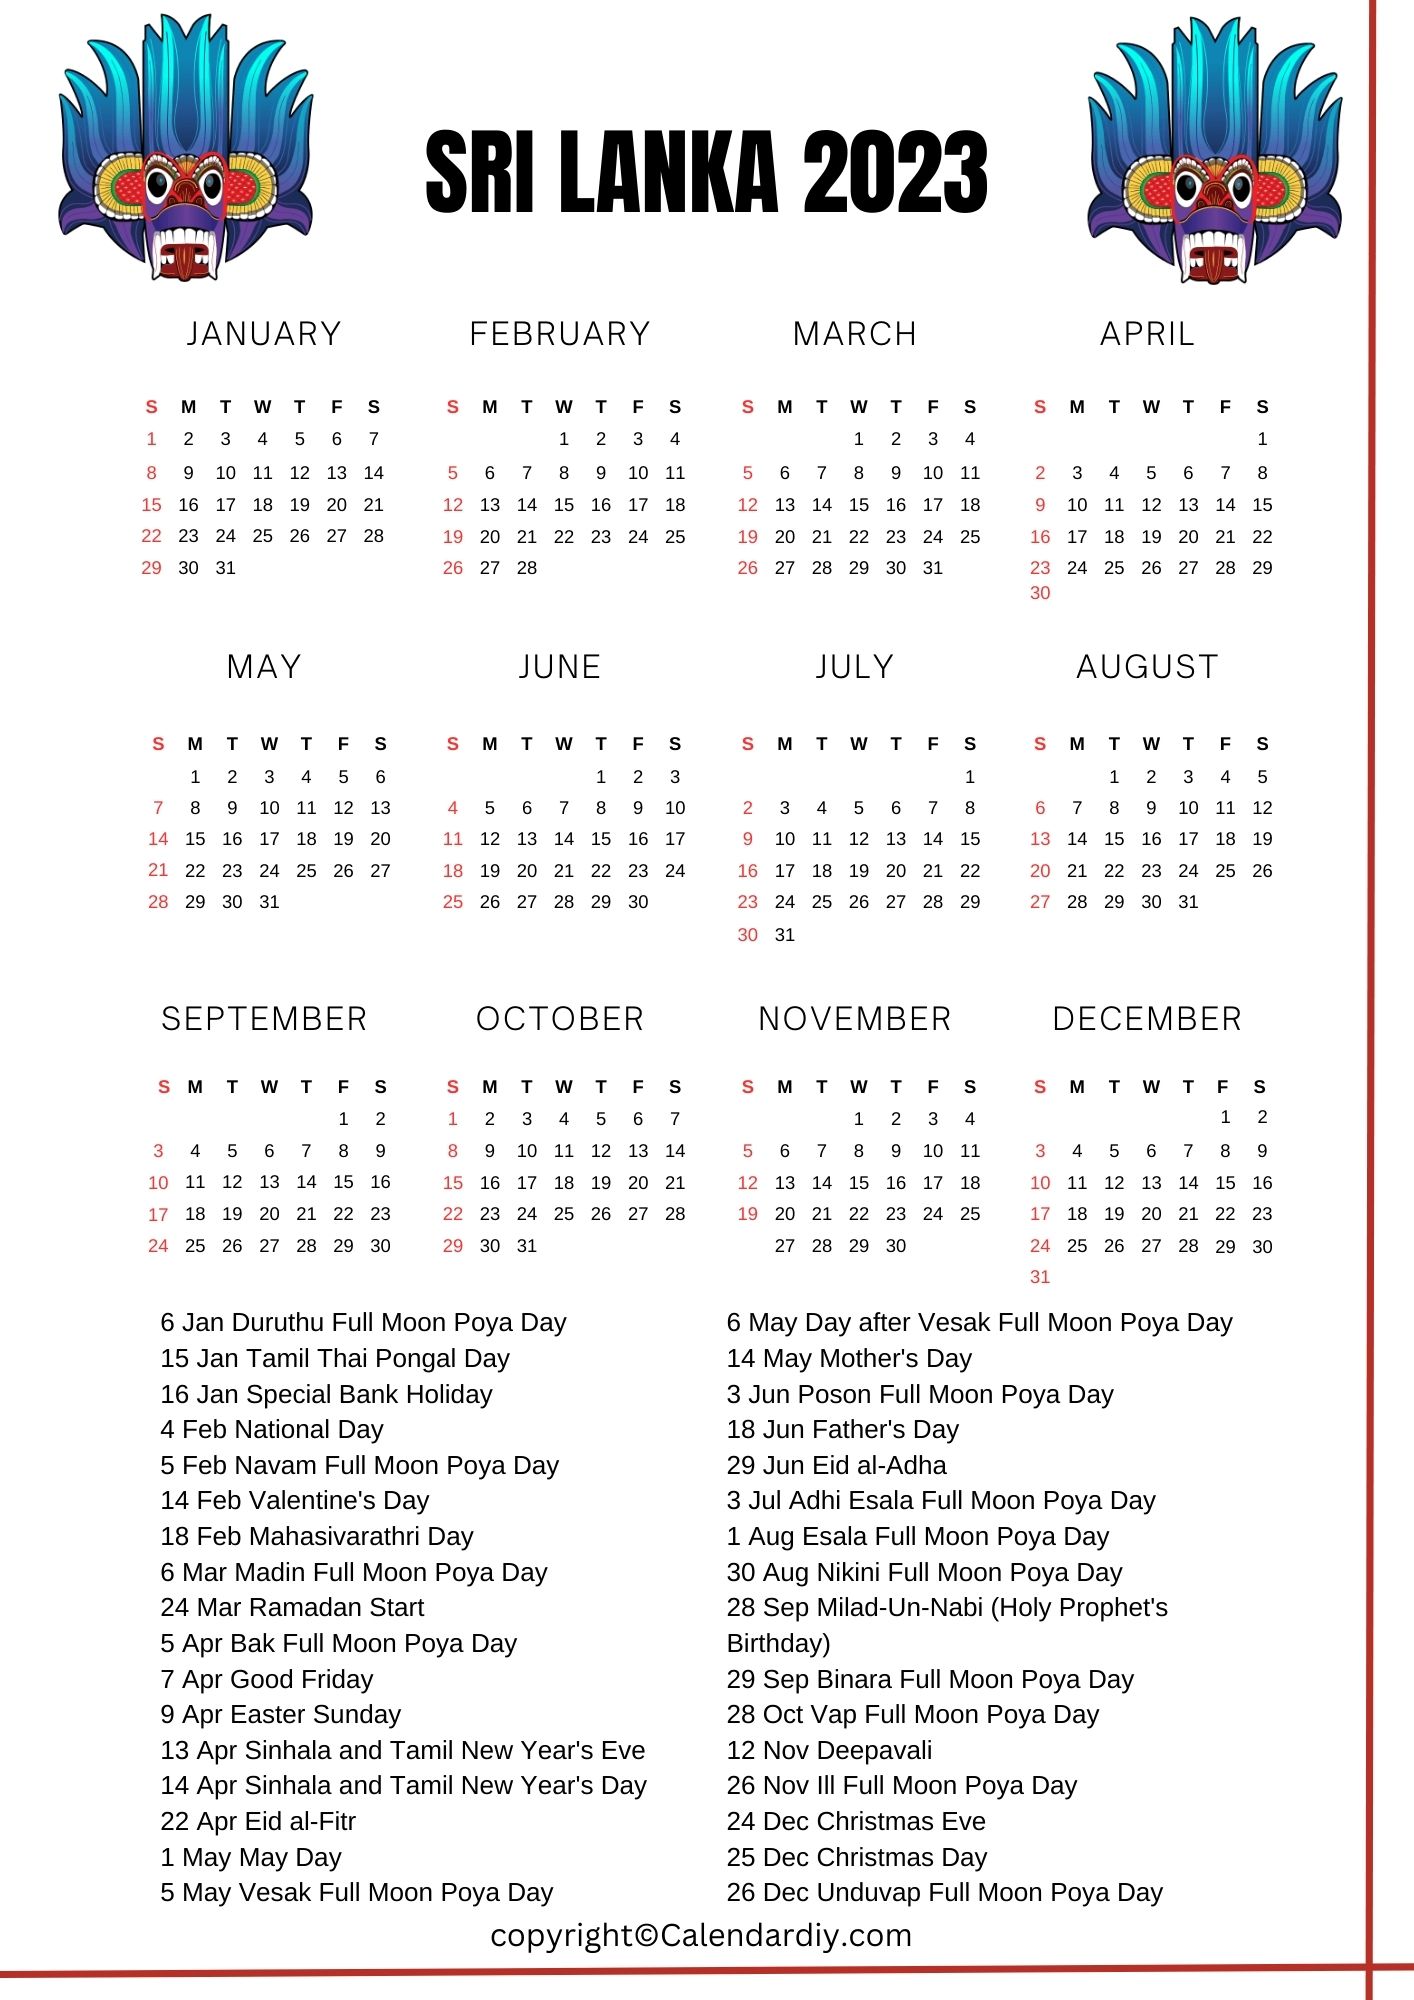 Sri Lanka 2023 Calendar